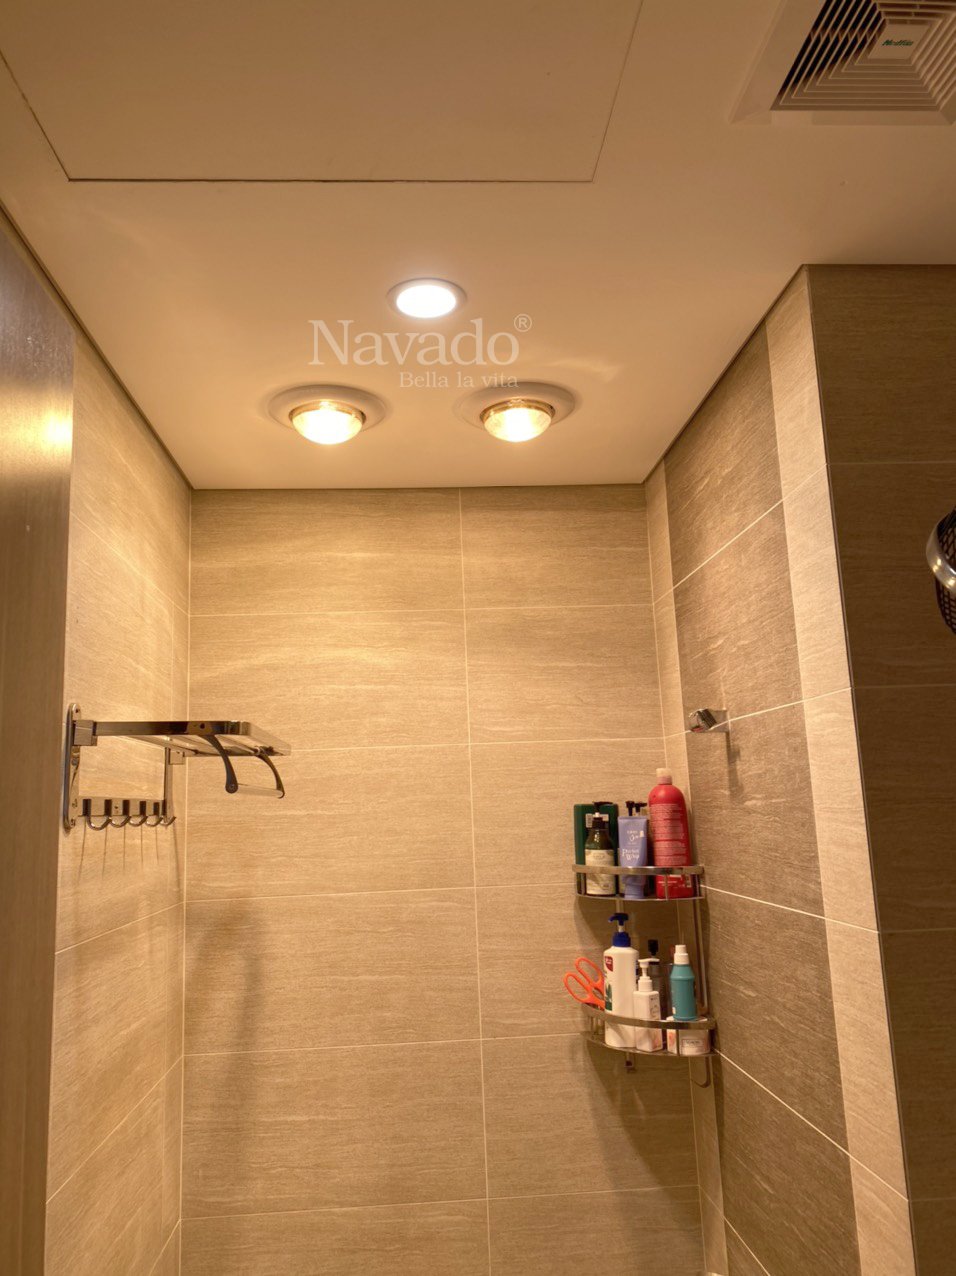 Thiết kế đèn sưởi phòng tắm âm trần tiện lợi và đẹp mắt nhất